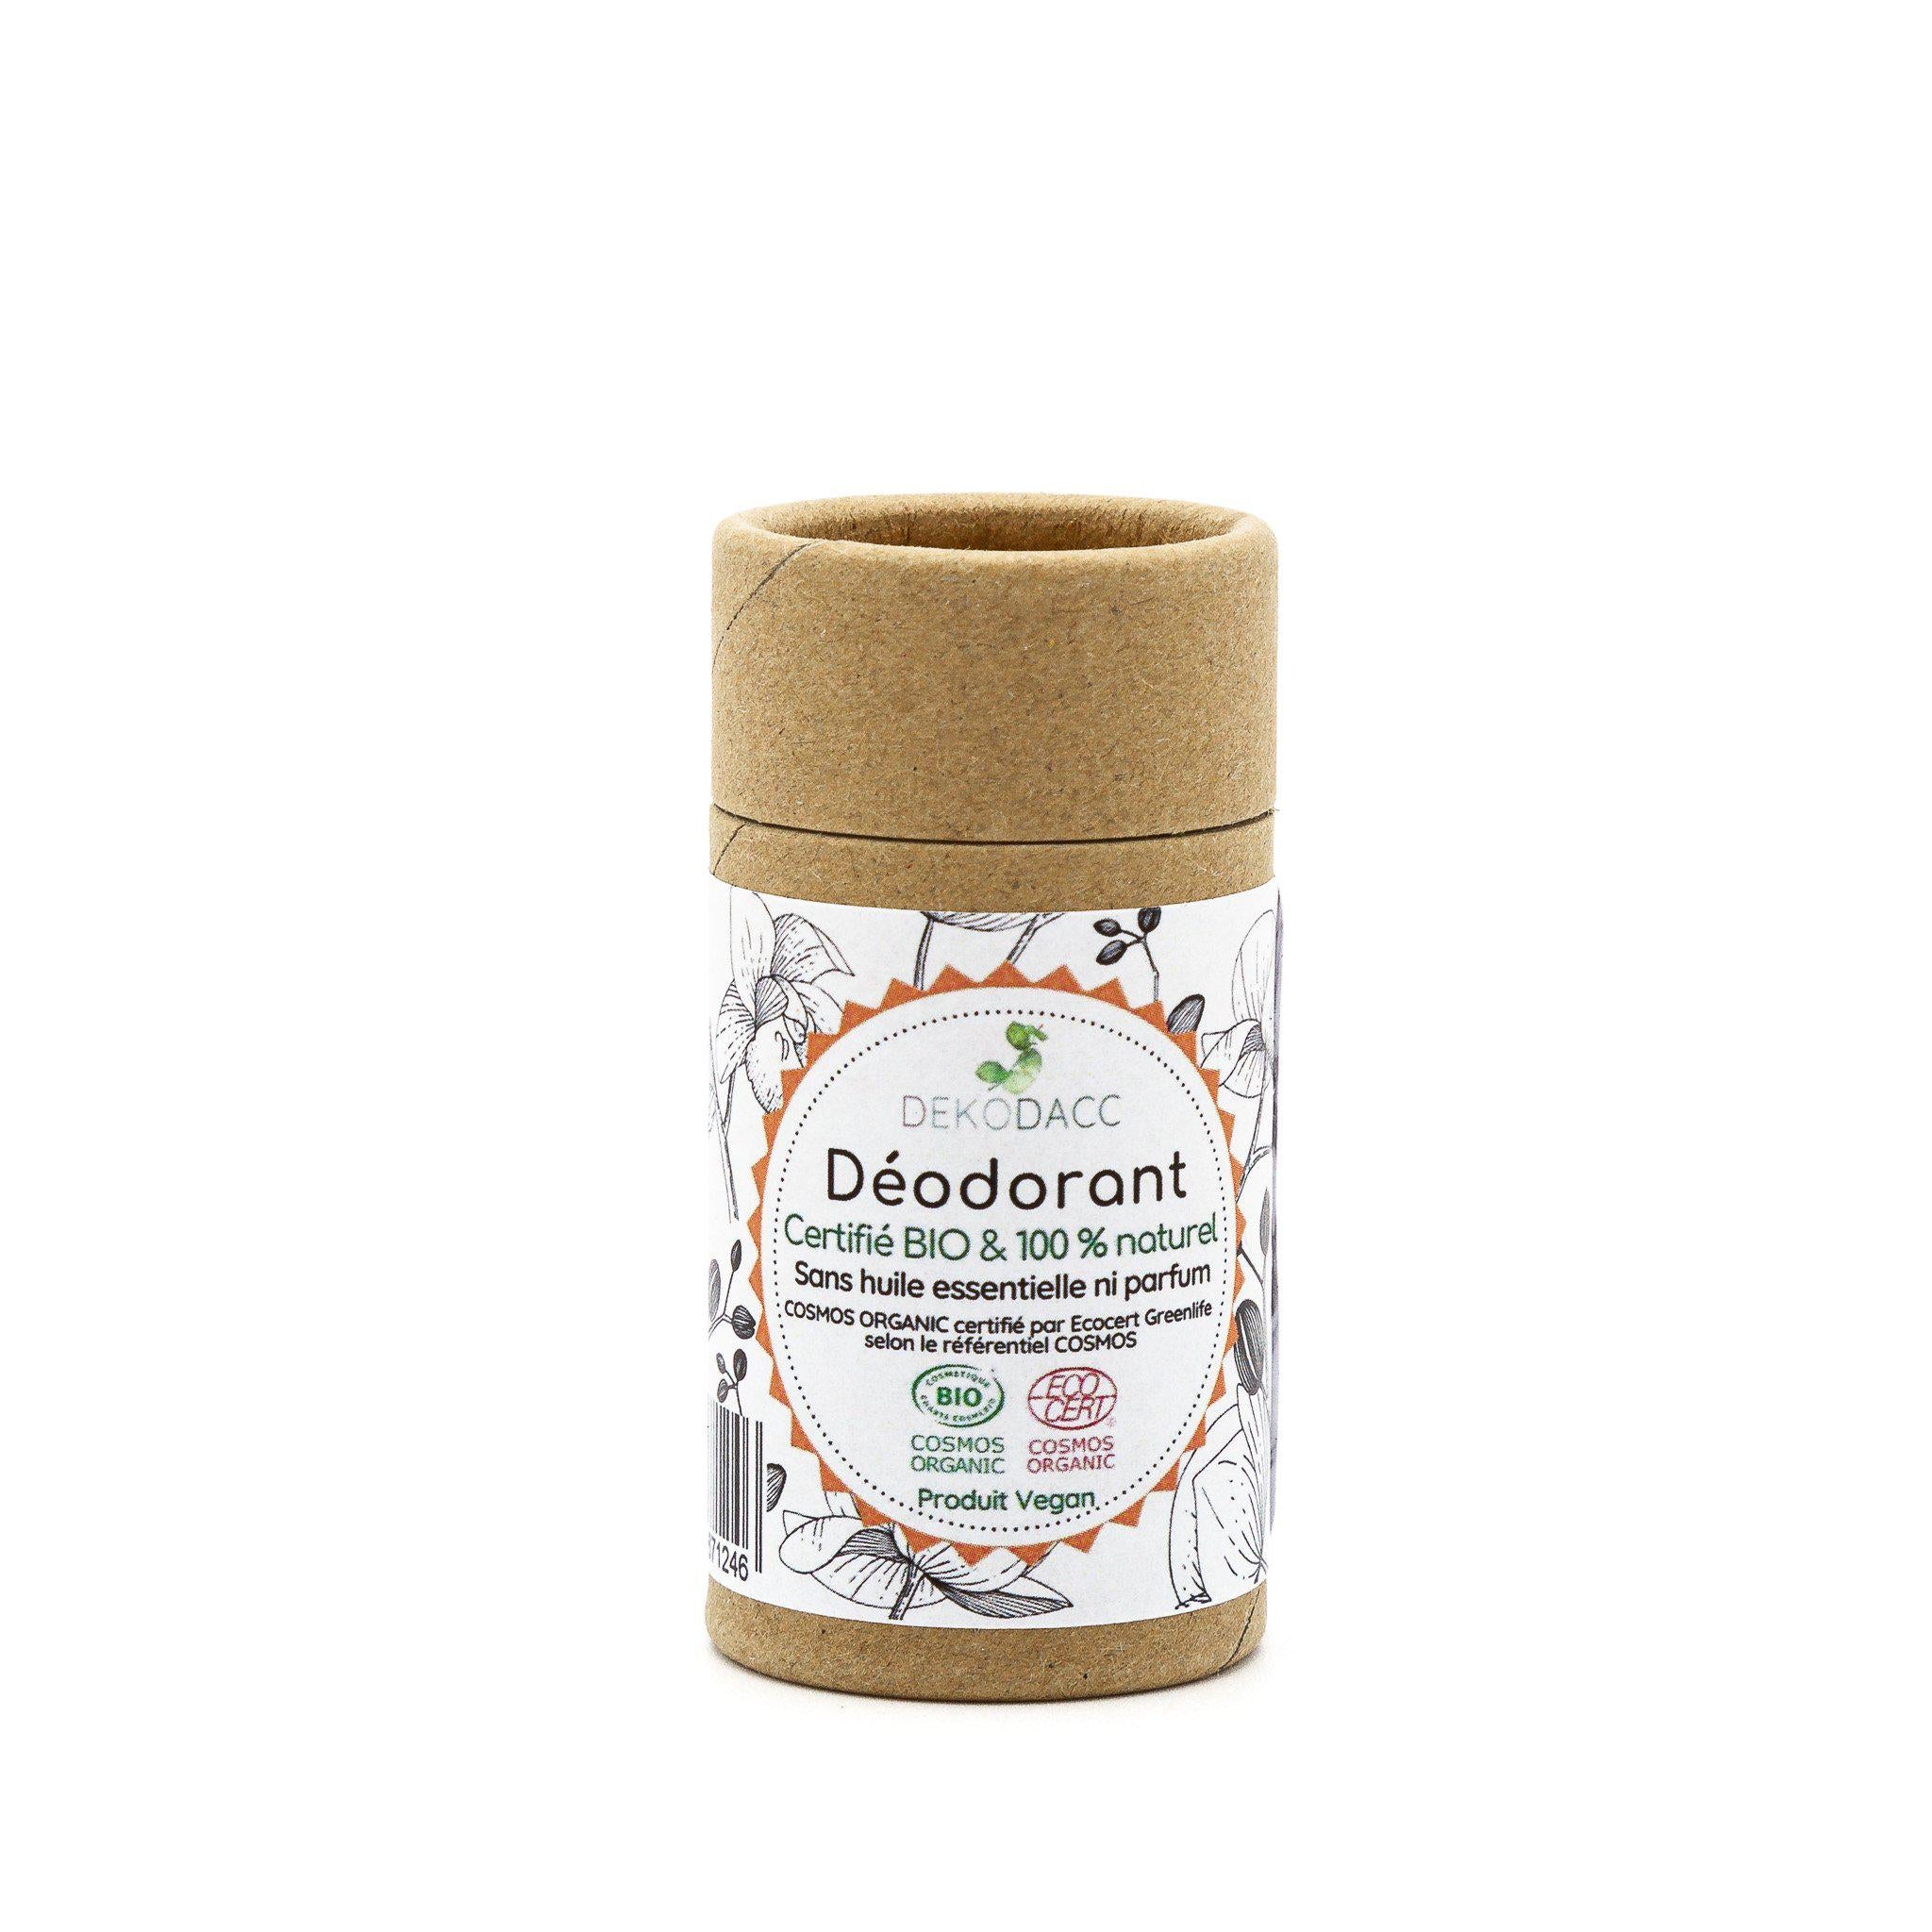 100 % naturel, certifié Bio et vegan, ce déodorant empêche les odeurs de se développer. Avec son odeur assez neutre, il sublimera votre été ou alors vos temps de transport